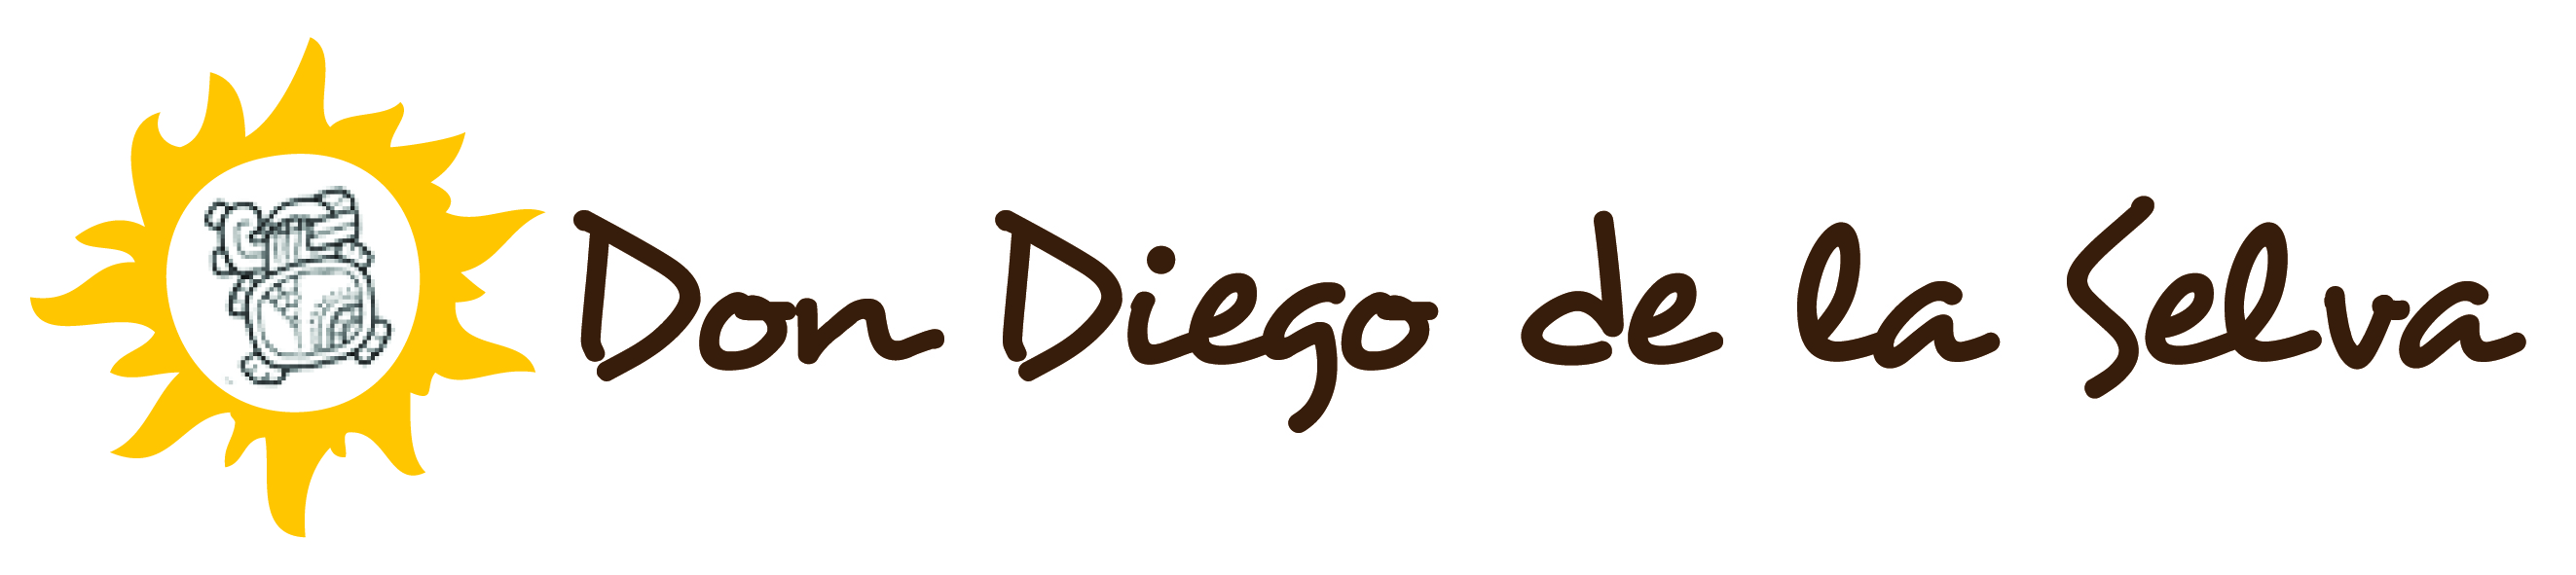 Don Diego de la Selva Logo